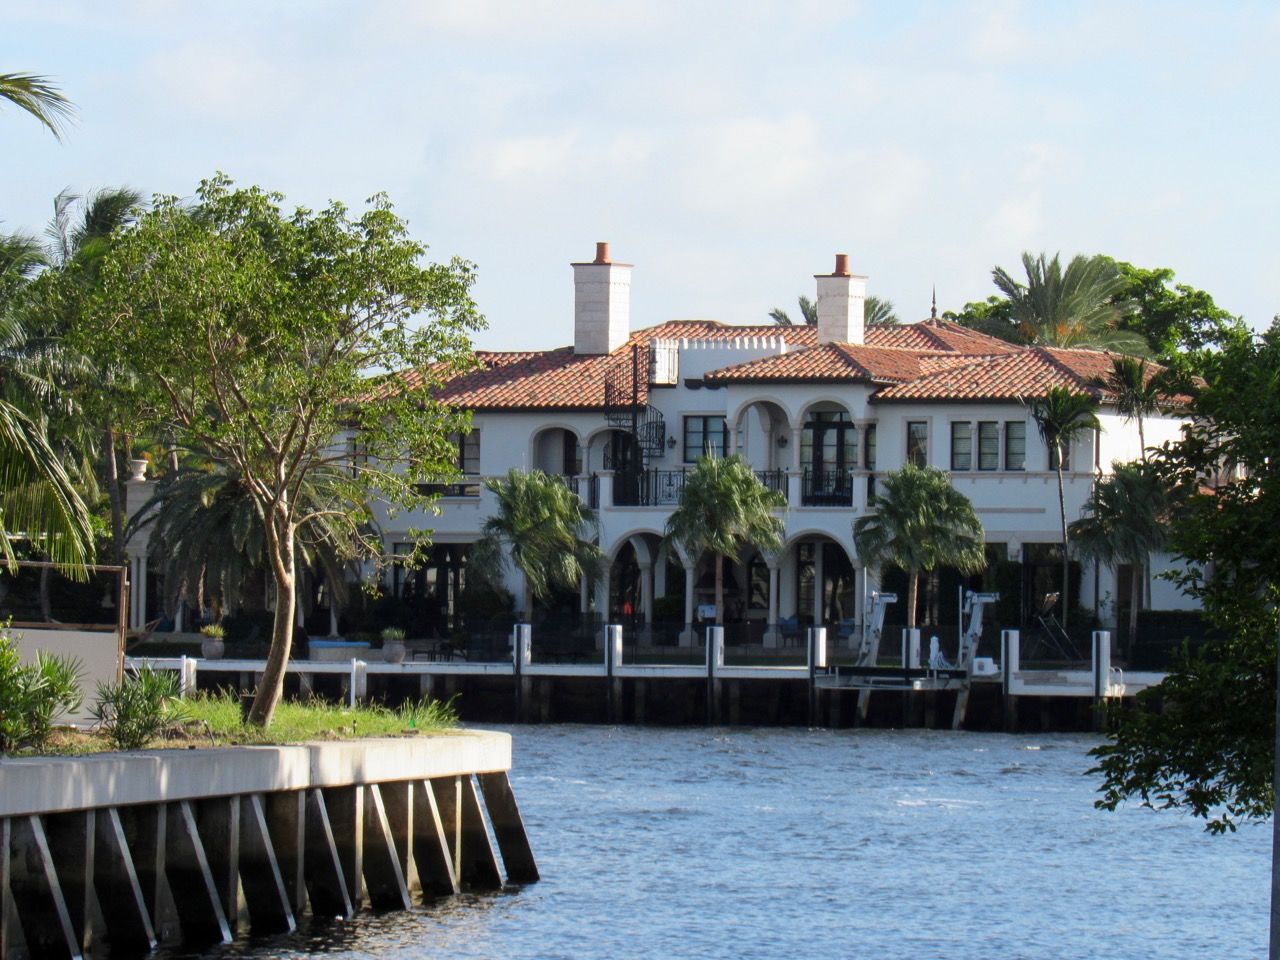 Maisons sur les rivières dans le quartier de Las Olas à Fort Lauderdale en Floride